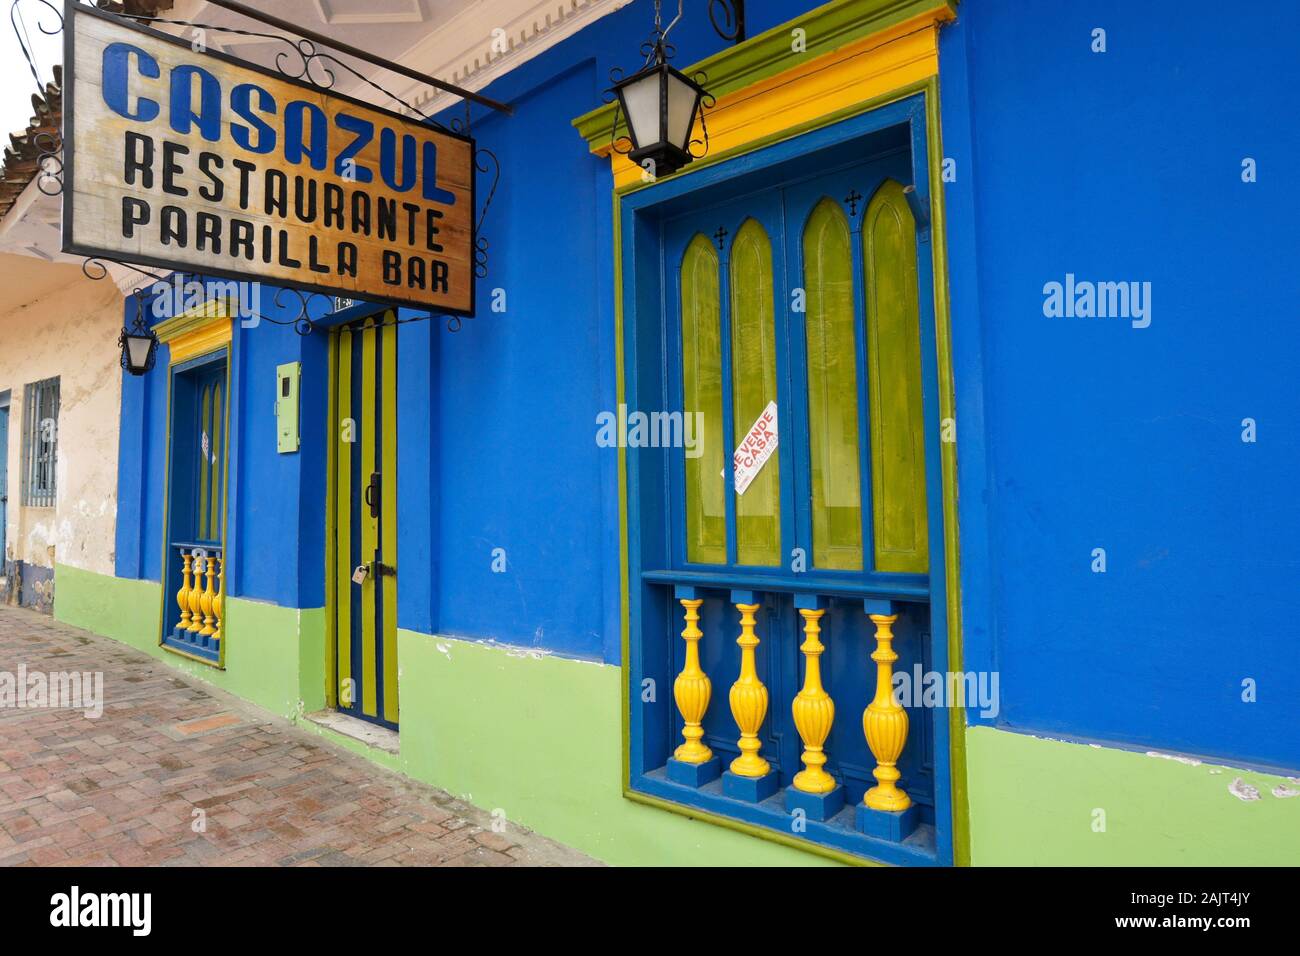 Colorato ristorante in stile coloniale in vendita con segno in spagnolo (Blue House Ristorante, grill bar), Nemocon, Colombia Foto Stock